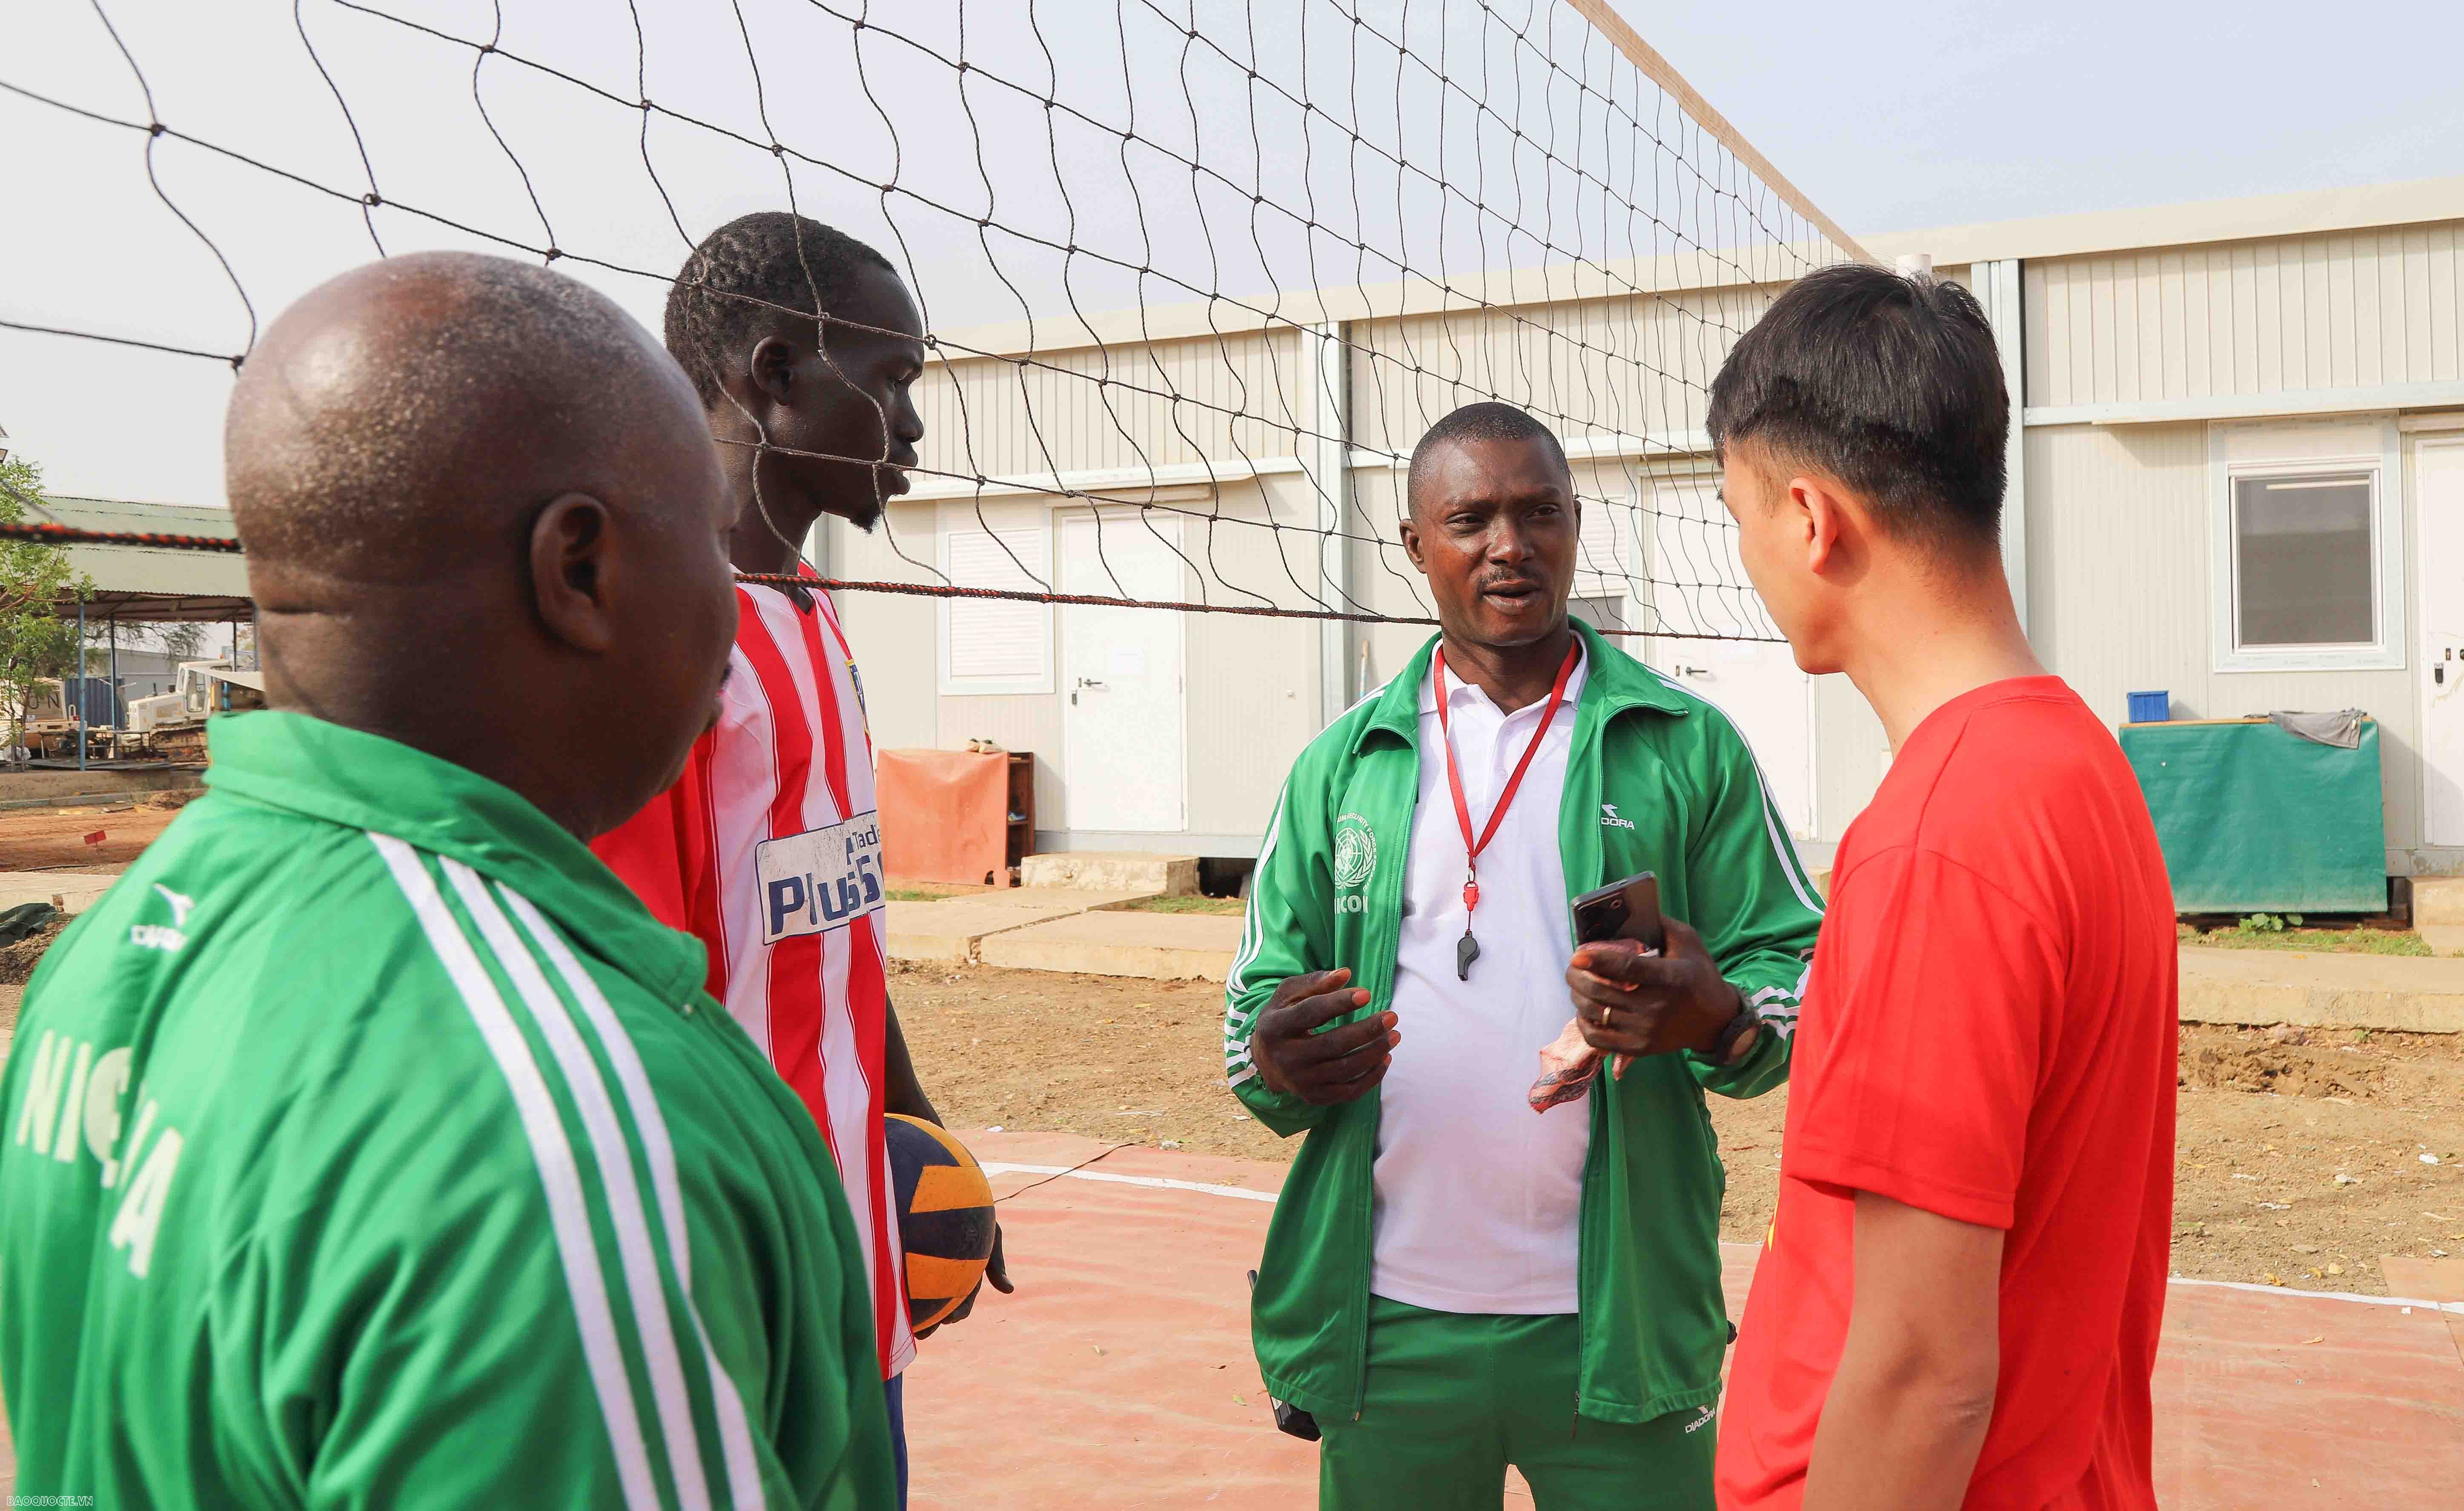 Đội Công binh cũng đã tổ chức giao lưu bóng chuyền với người dân địa phương Abyei và mời một số quân nhân Nigeria làm trọng tài. Sau trận đấu, Đội đã tặng người dân một số món quà và mời người dân thưởng thức các món ăn truyền thống của Việt Nam.